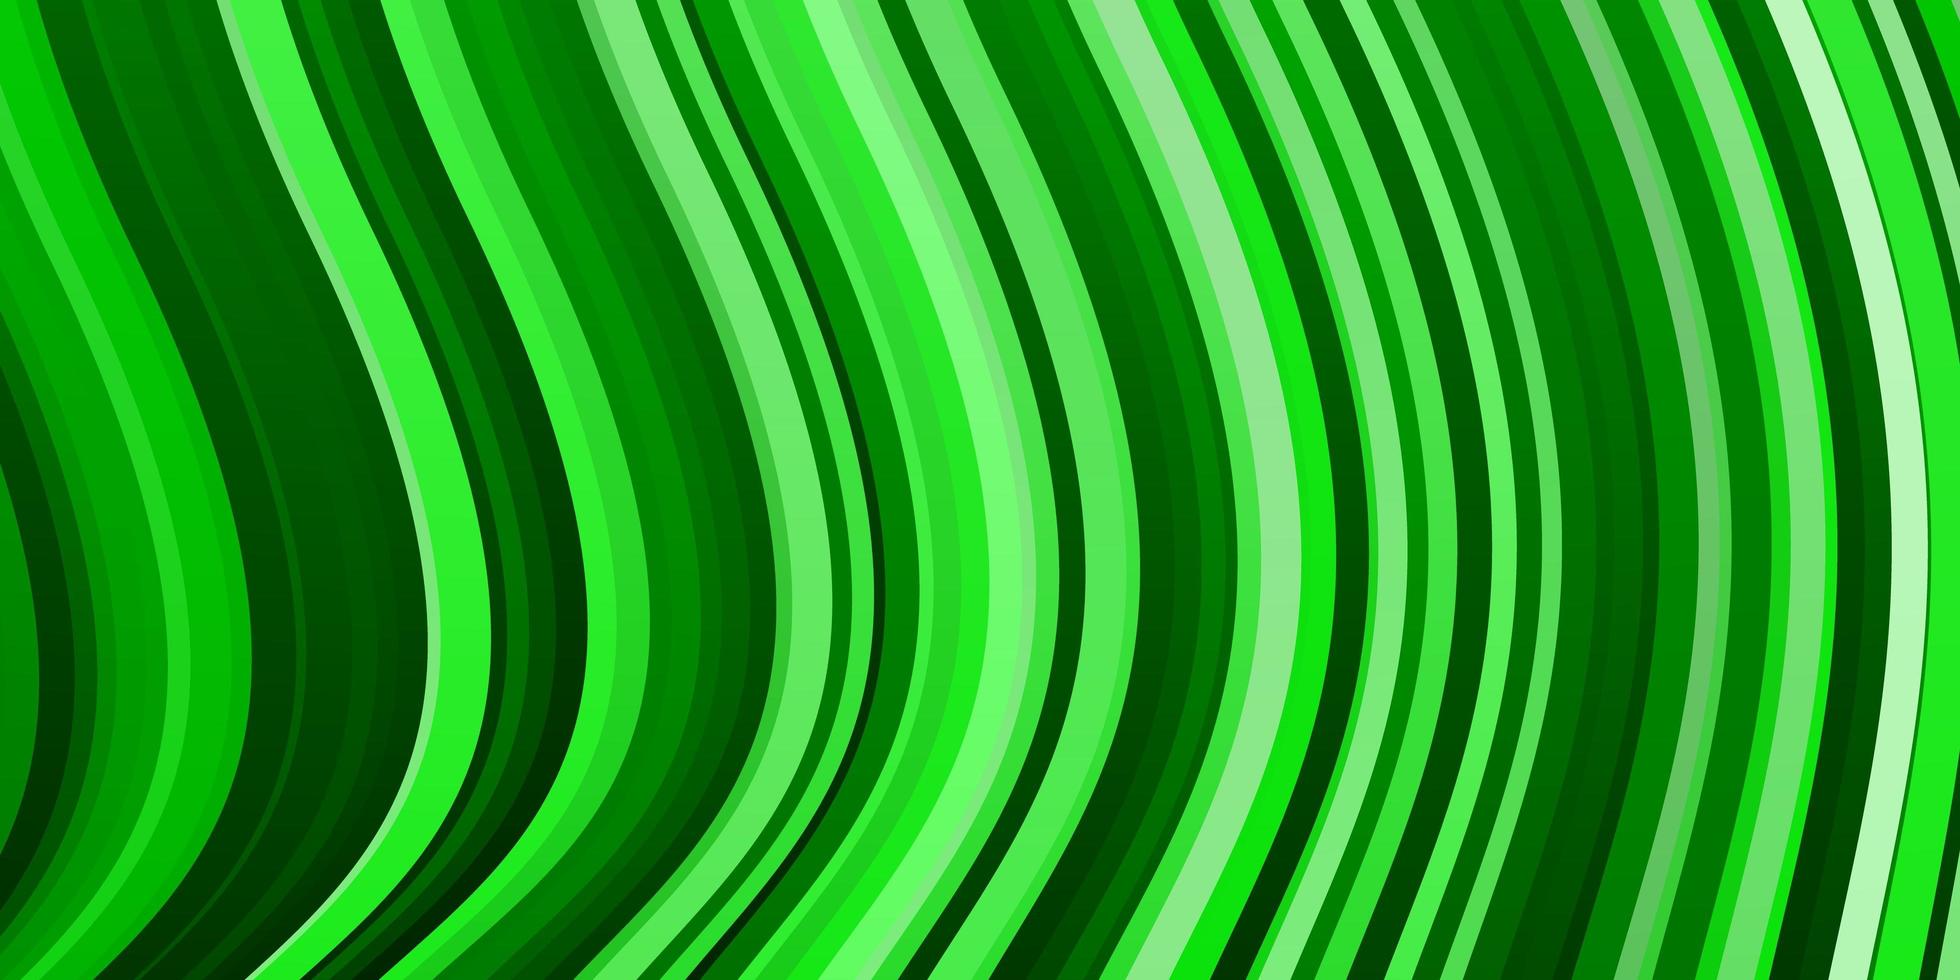 sfondo vettoriale verde chiaro con arco circolare.